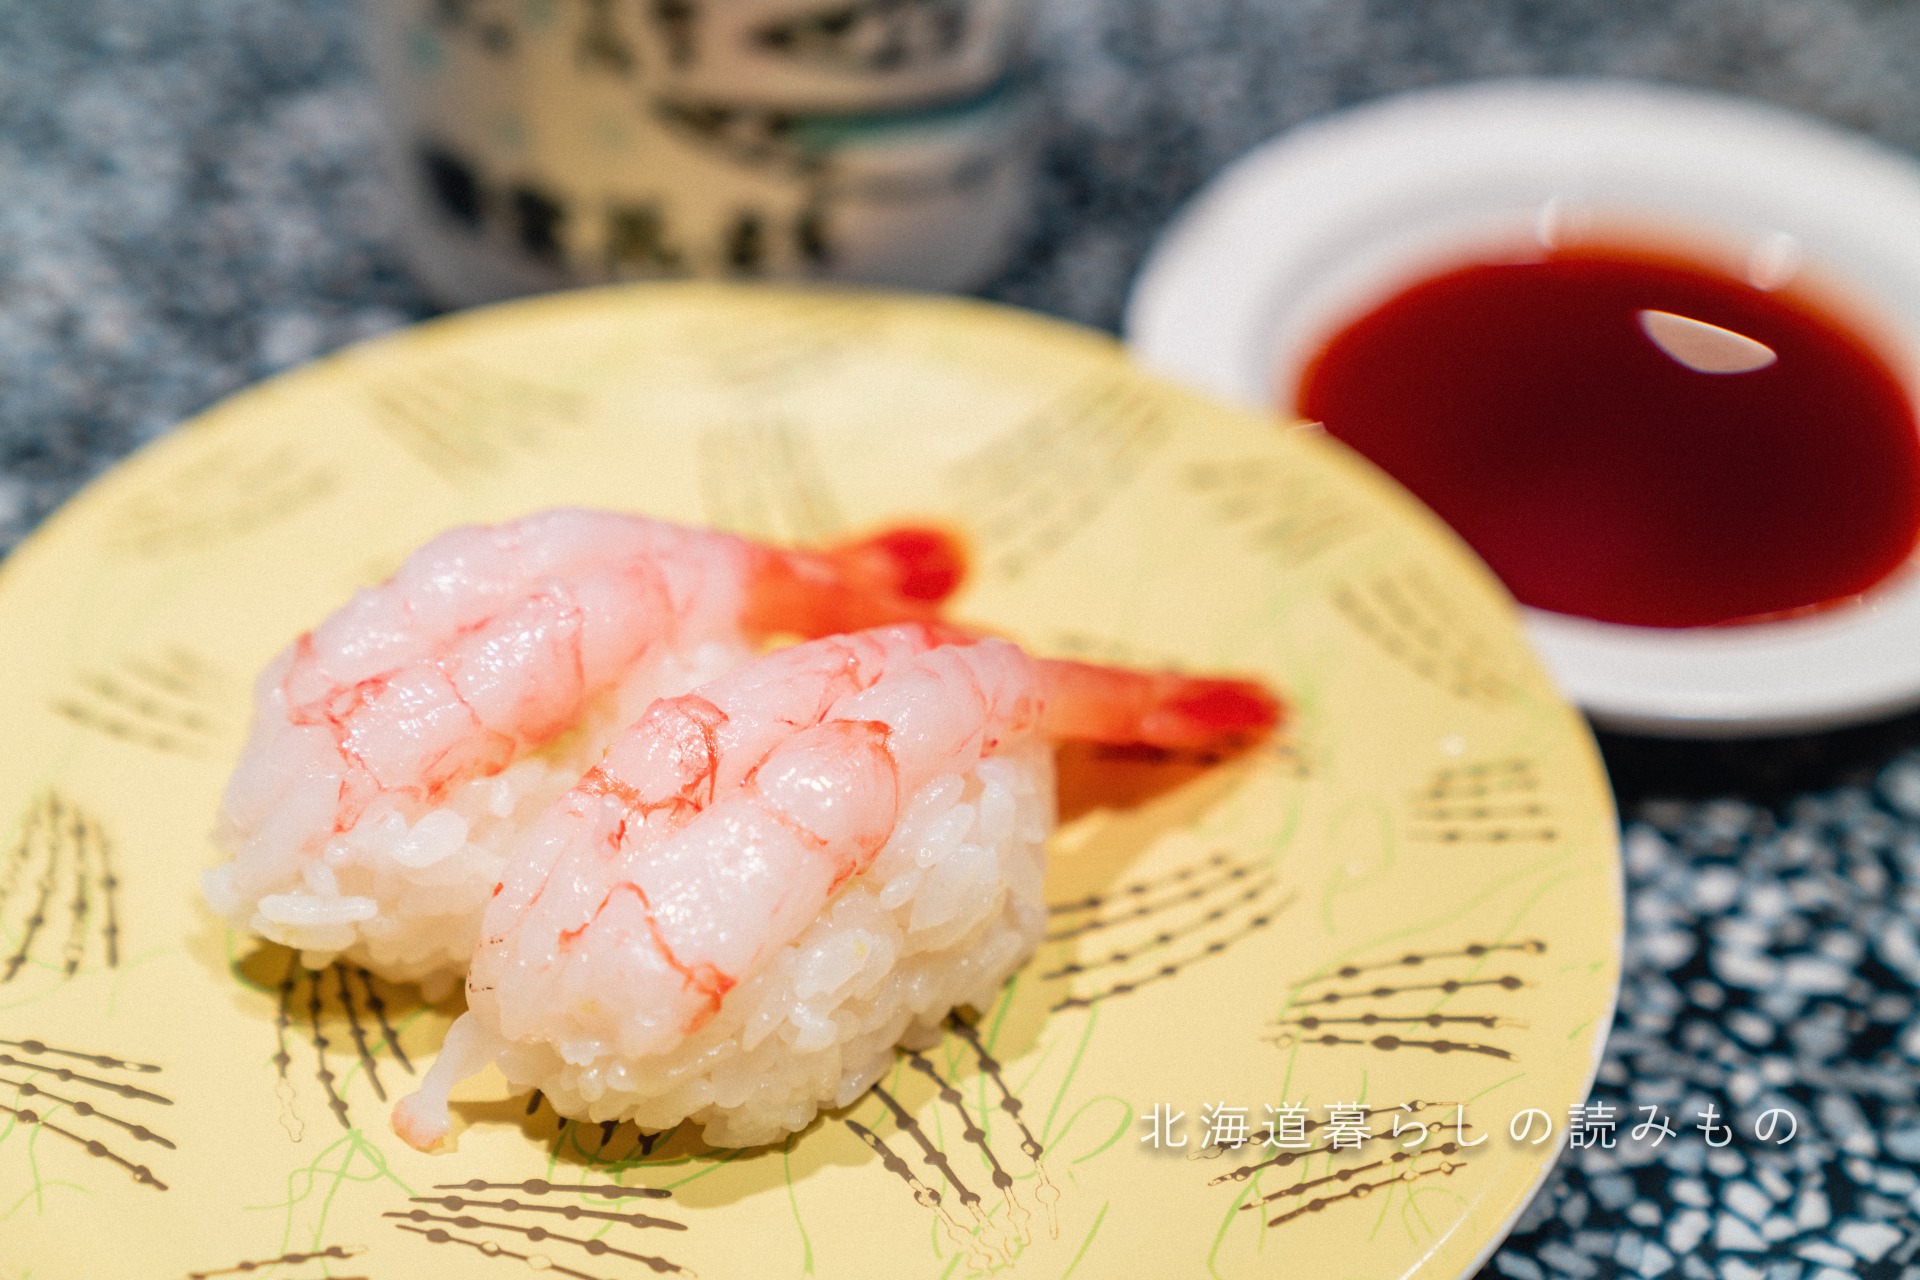 迴轉壽司根室花丸的菜單上的「甜蝦」